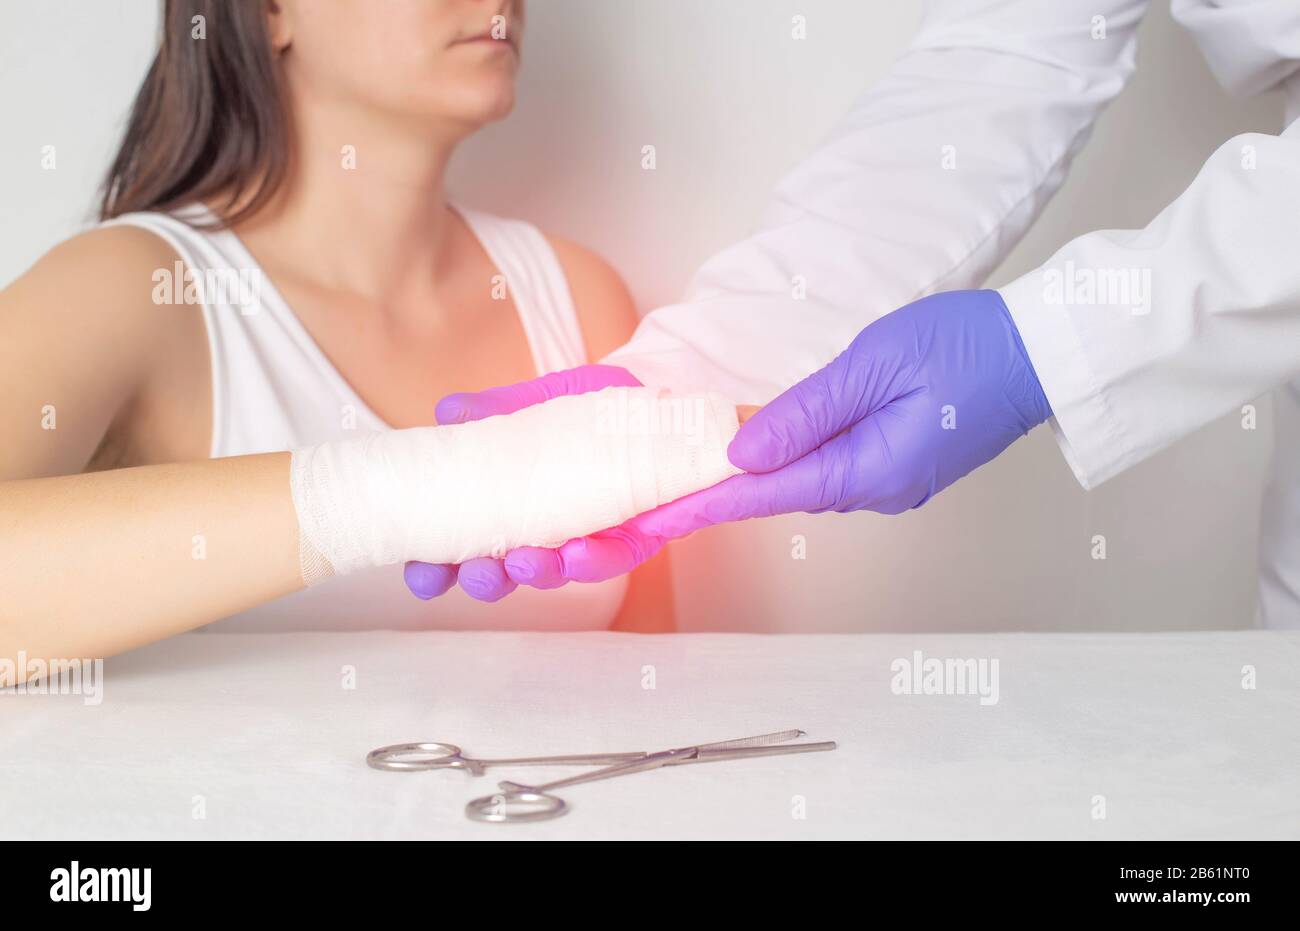 Un medico chirurgo esamina il palmo di un paziente per una frattura o una spaccatura in un osso. Frattura dello scapoide, medica Foto Stock